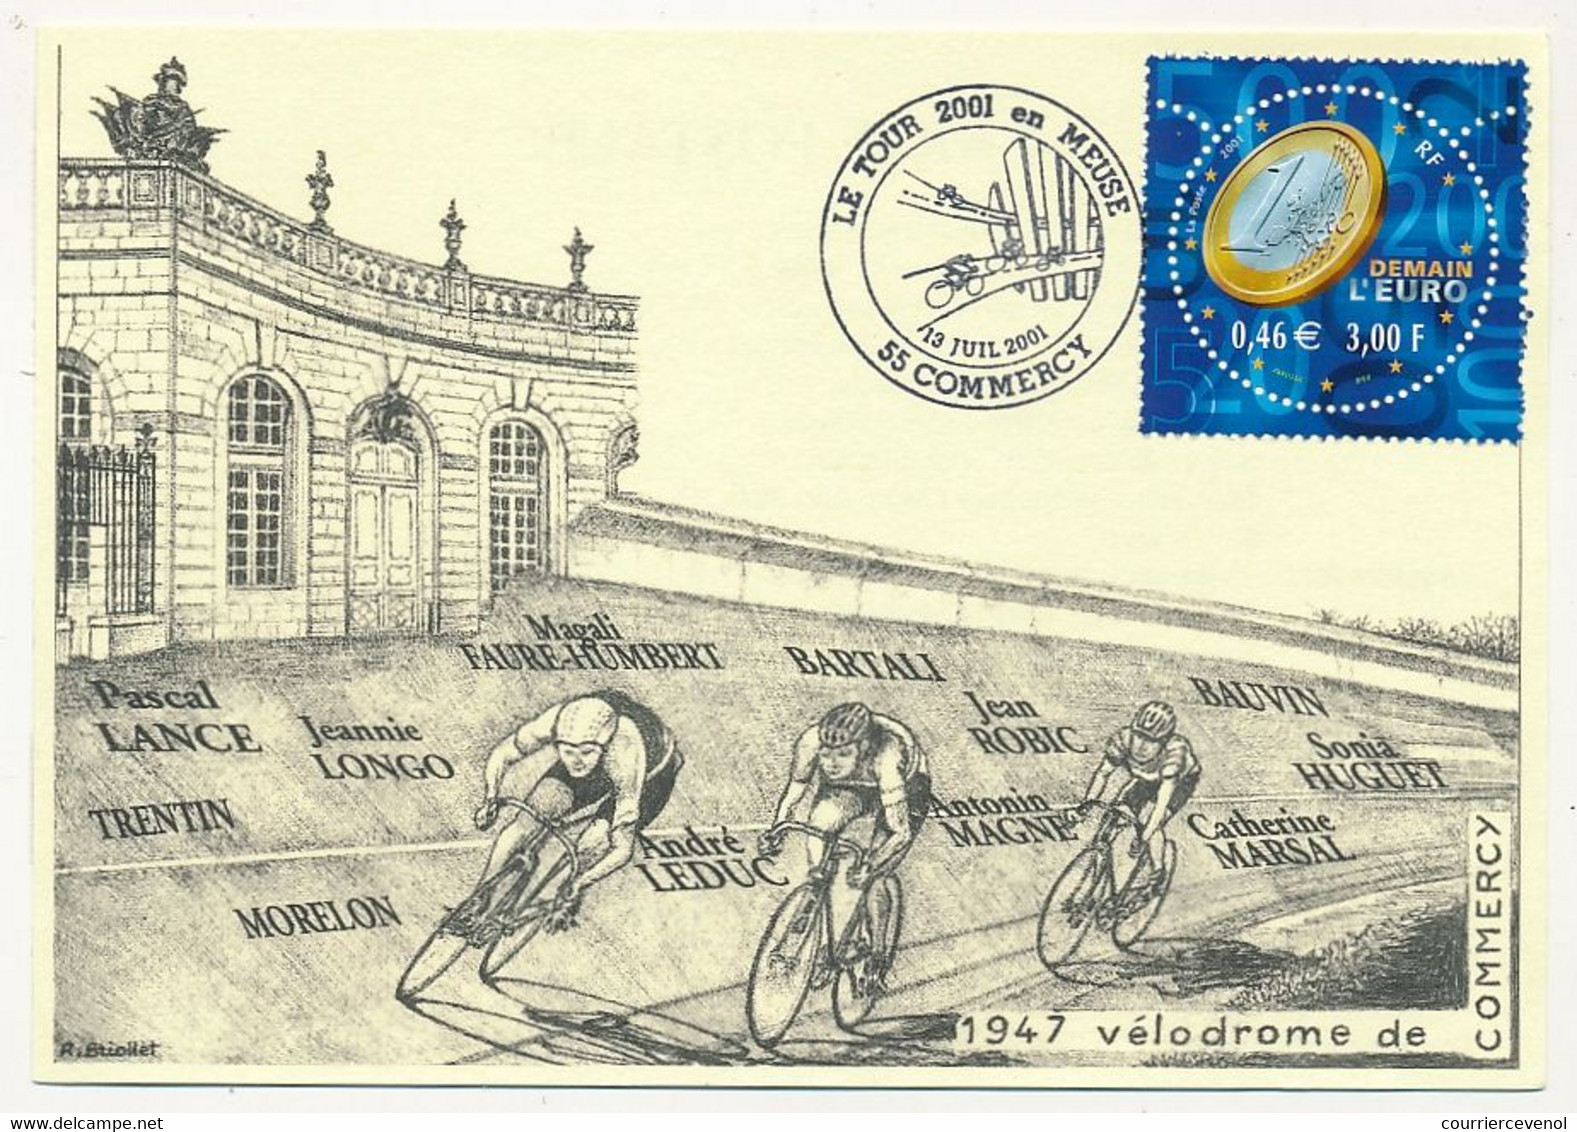 FRANCE - CPM Commémorative - Le Tour 2001 En Meuse - Vélodrome De Commercy 19/7/2001 - Oblit. Temporaire - Cycling